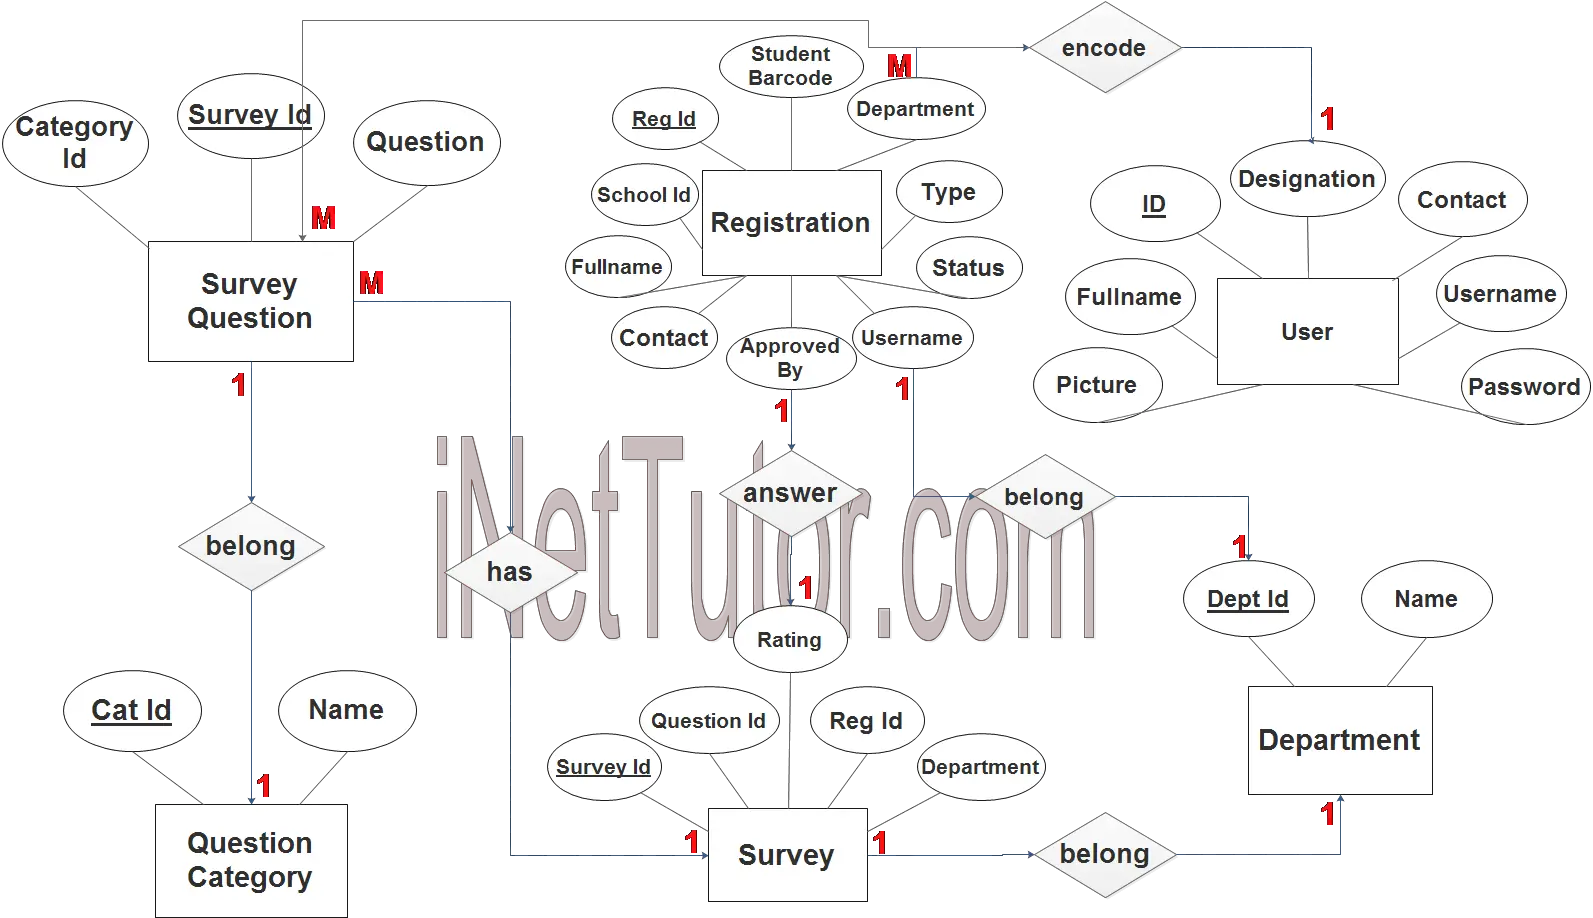 Customer Satisfaction System ER Diagram - Step 3 Complete ERD